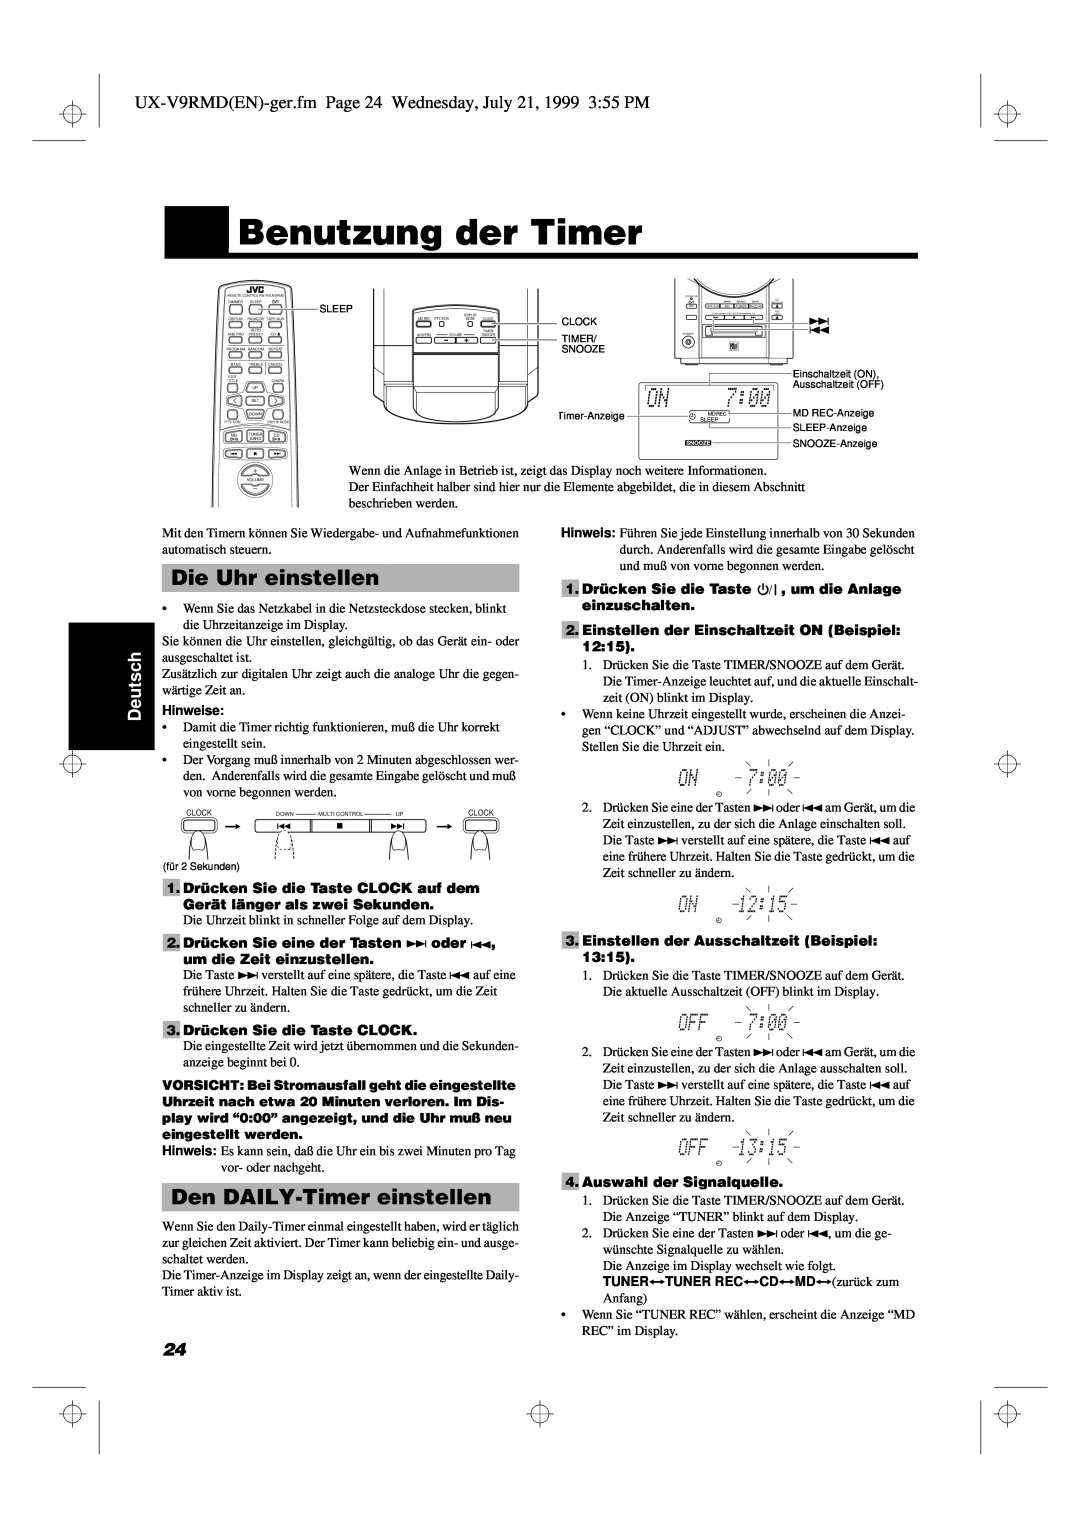 JVC UX-V9RMD manual Benutzung der Timer, Die Uhr einstellen, Den DAILY-Timereinstellen, Deutsch 